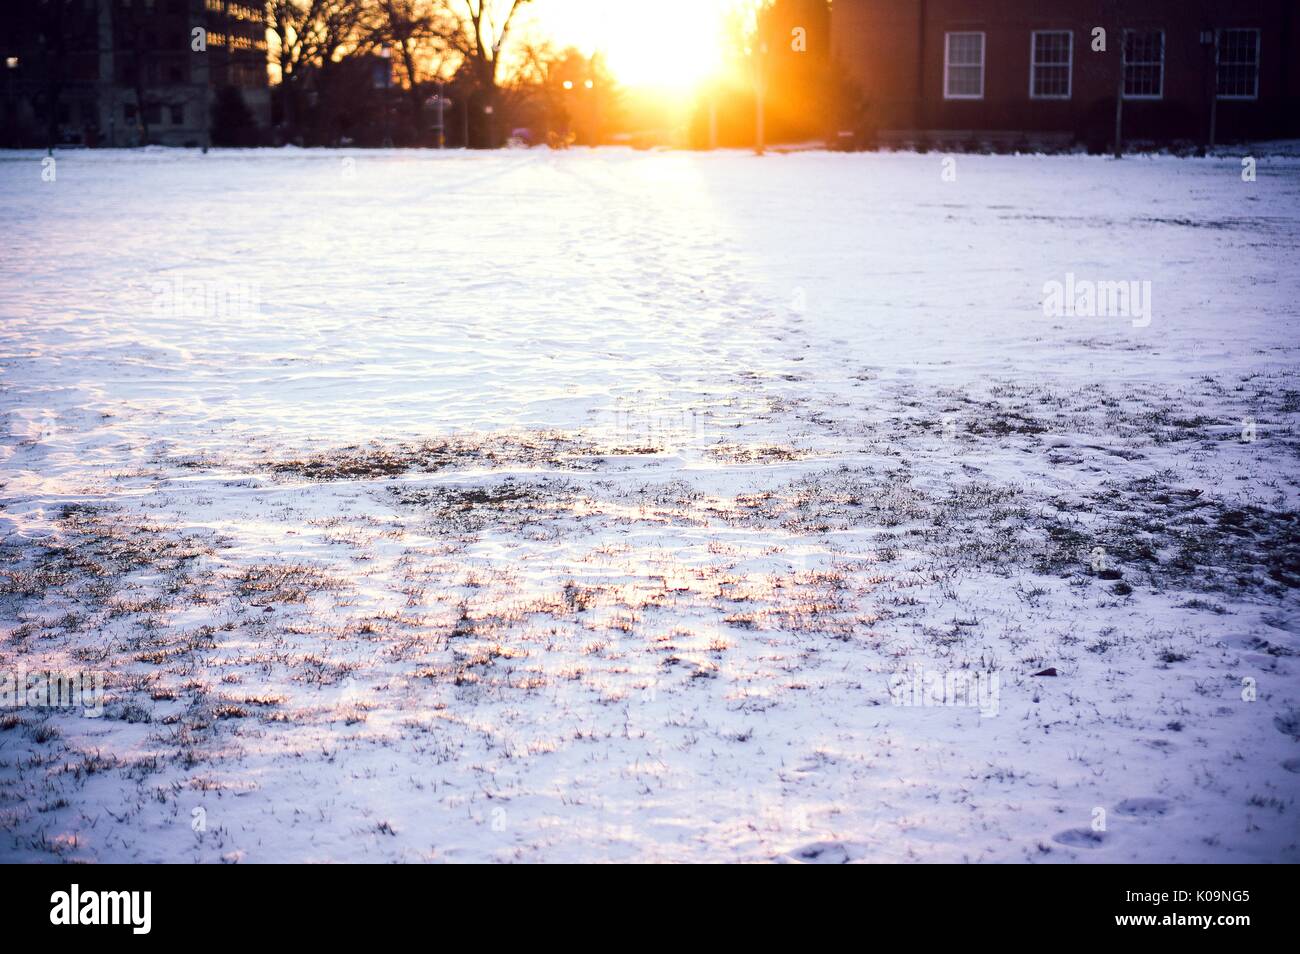 Se pone el sol entre edificios académicos en los nevados Homewood campus de la Universidad Johns Hopkins en Baltimore, Maryland, en 2015. Cortesía de Eric Chen. Foto de stock